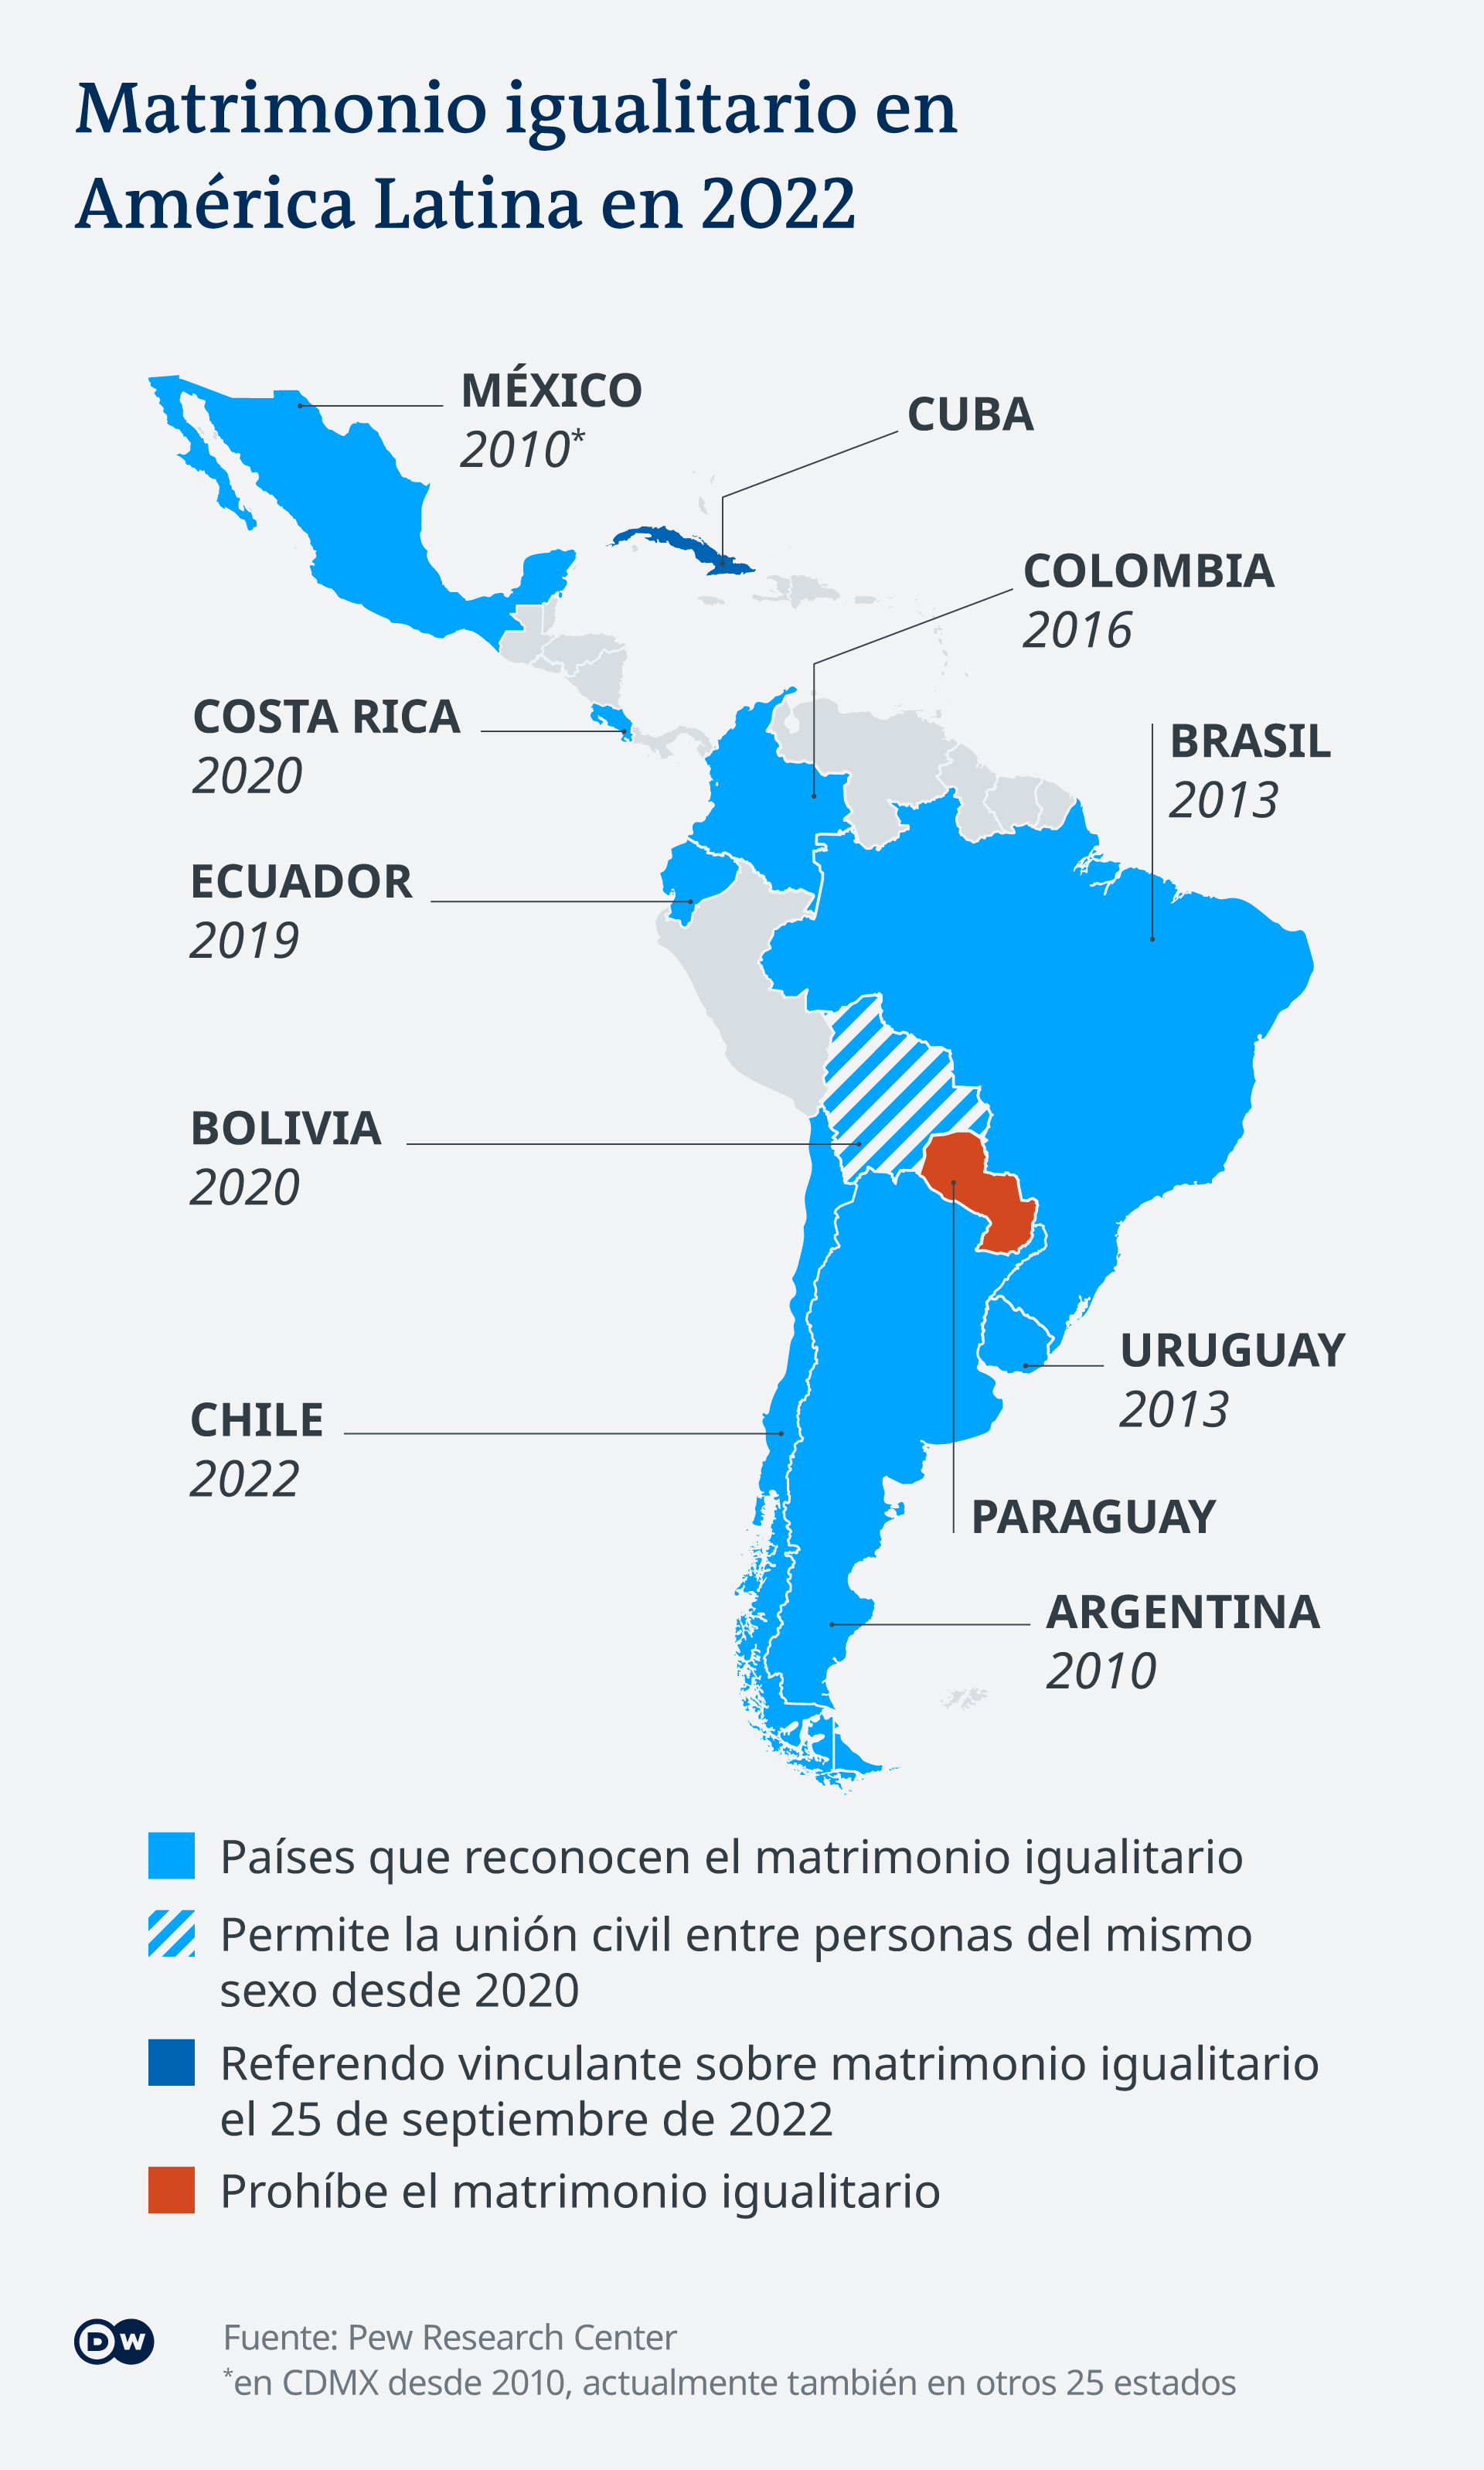 Mapa de países latinoamericano que reconocen el matrimonio igualitario. 